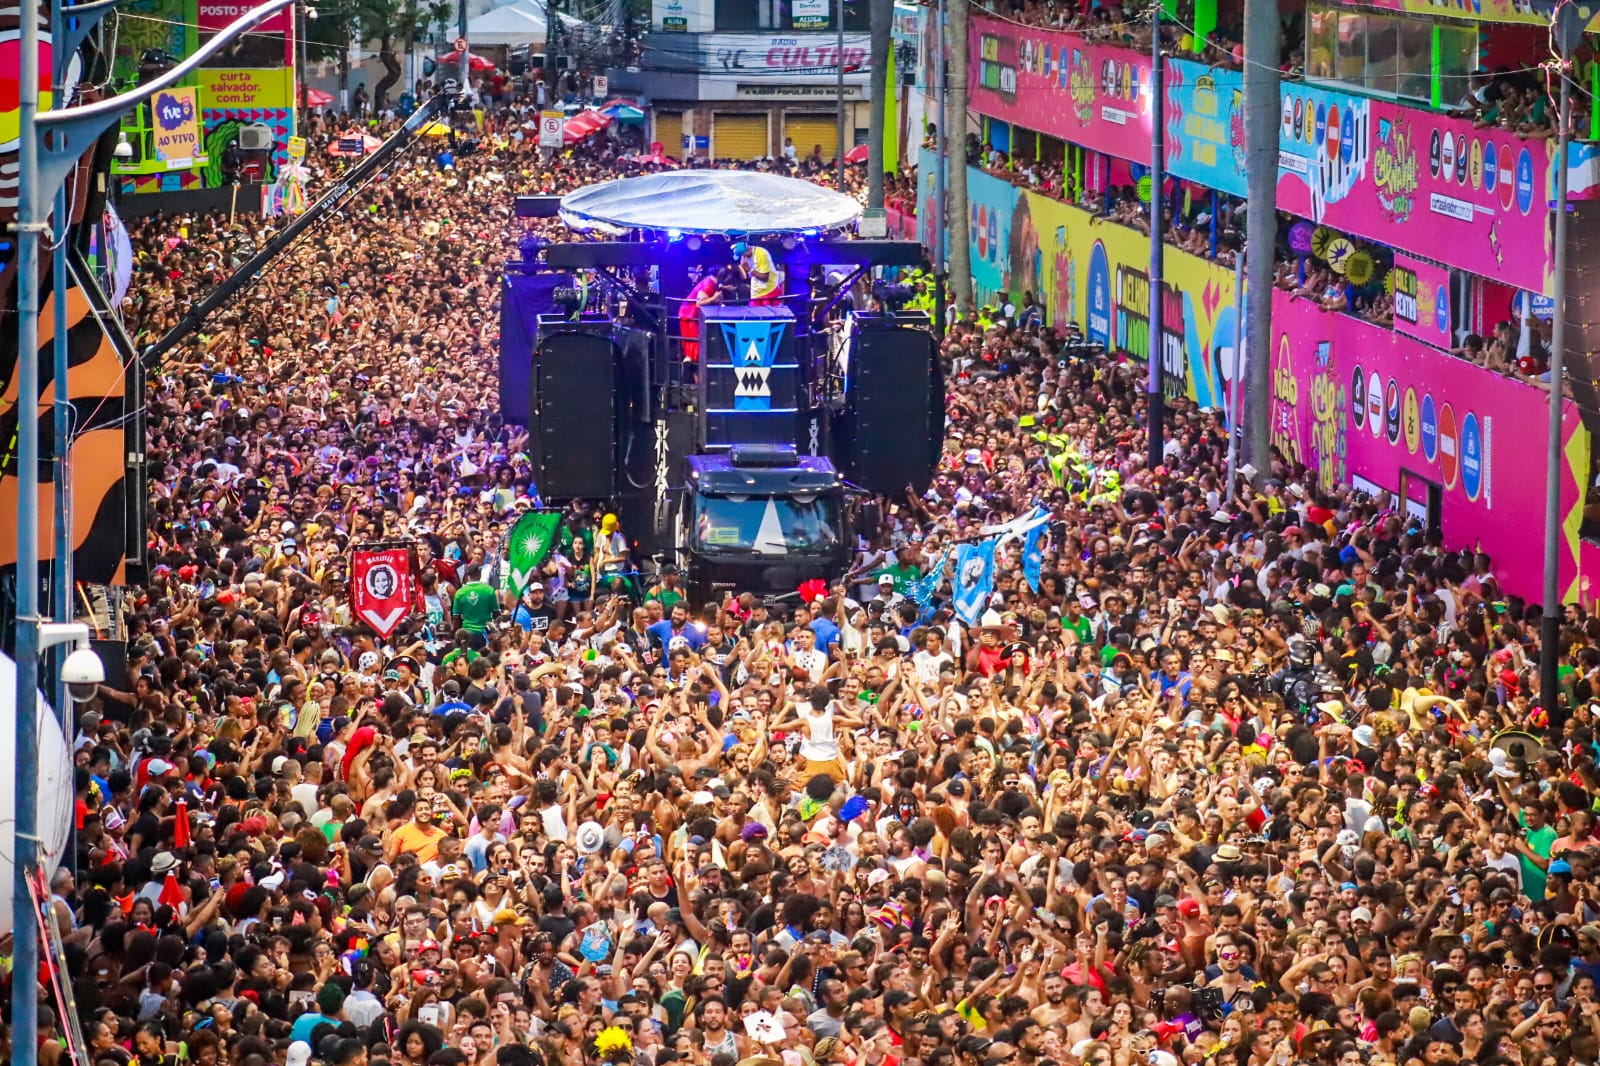 Marcado pela diversidade, Carnaval de Salvador atrai turistas do Brasil e do mundo